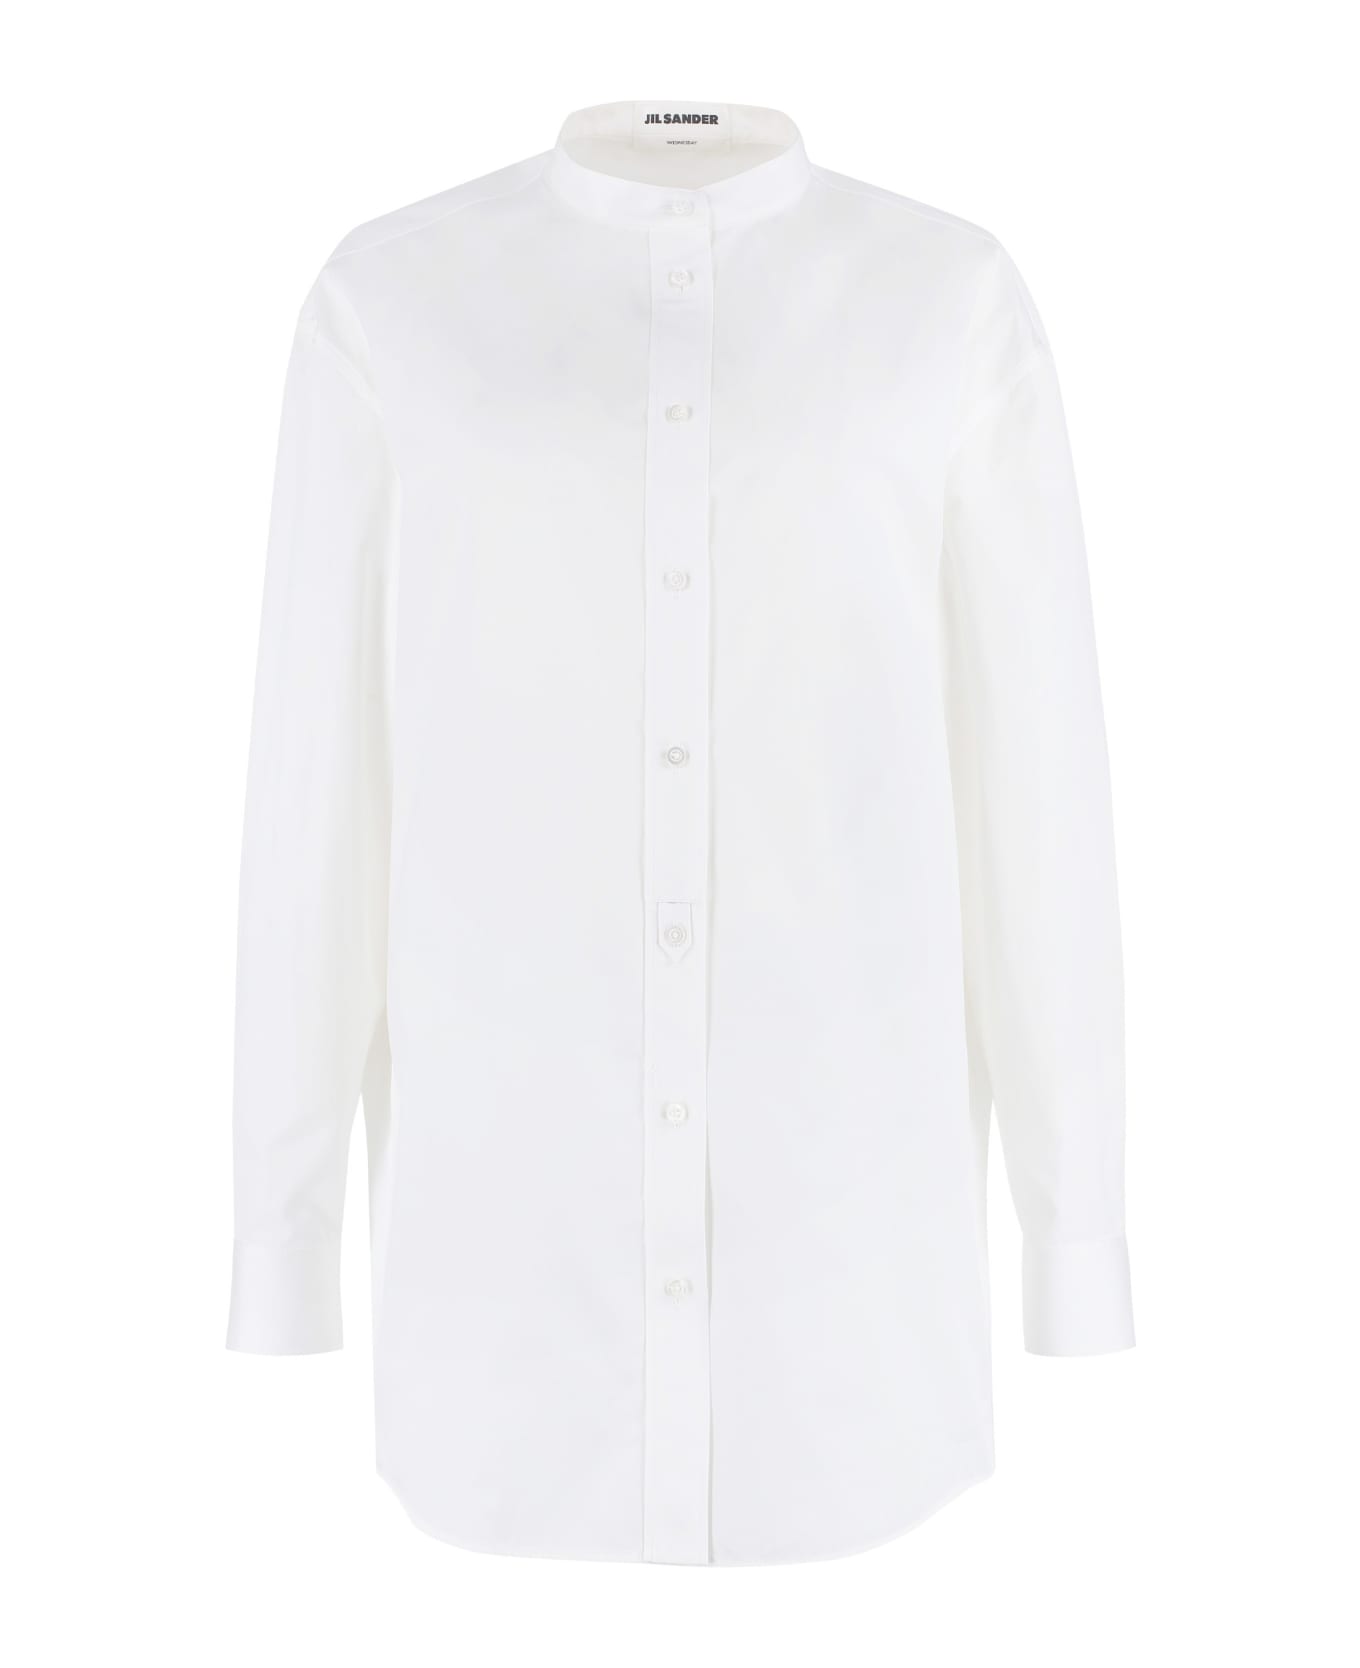 Jil Sander Cotton Poplin Shirt - White